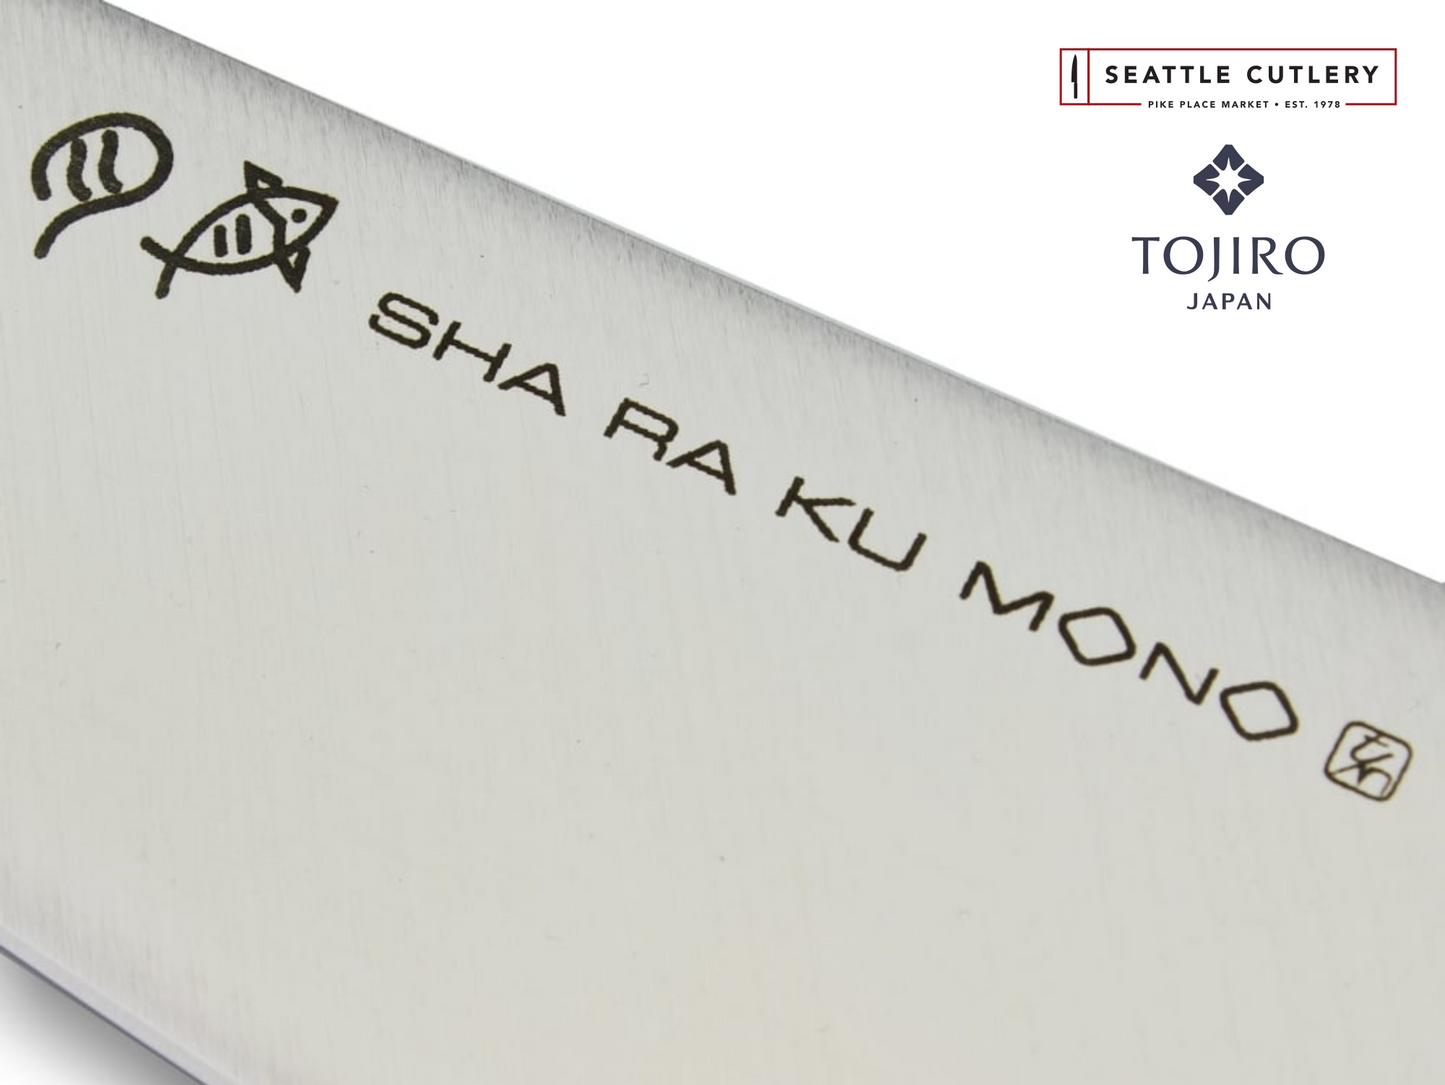 Sha Ra Ku Mono Utility Knife